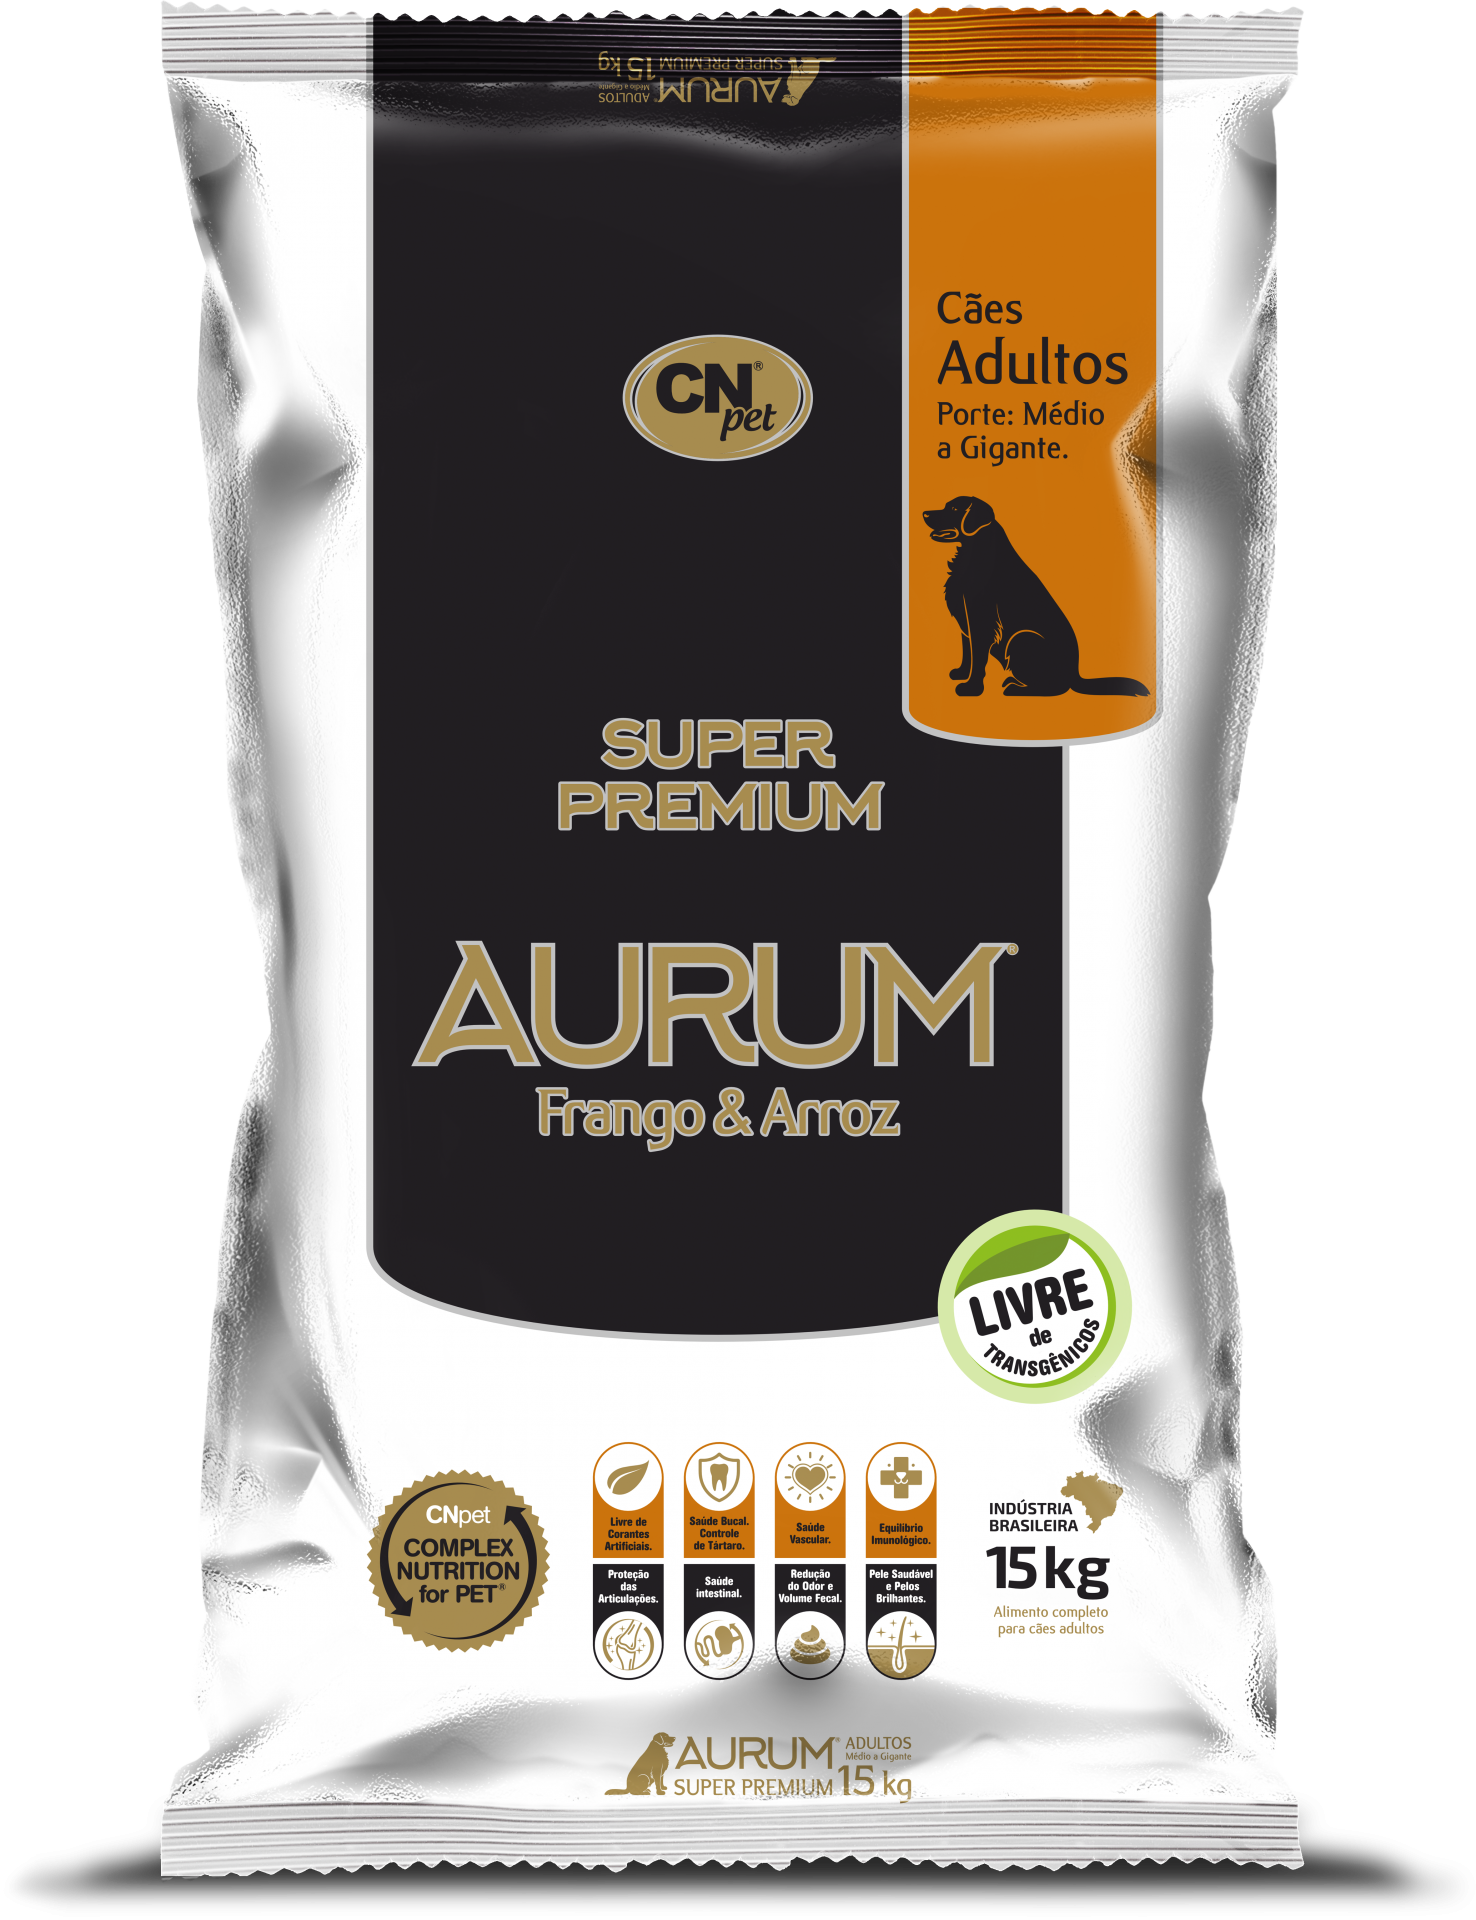 AURUM – Super Premium